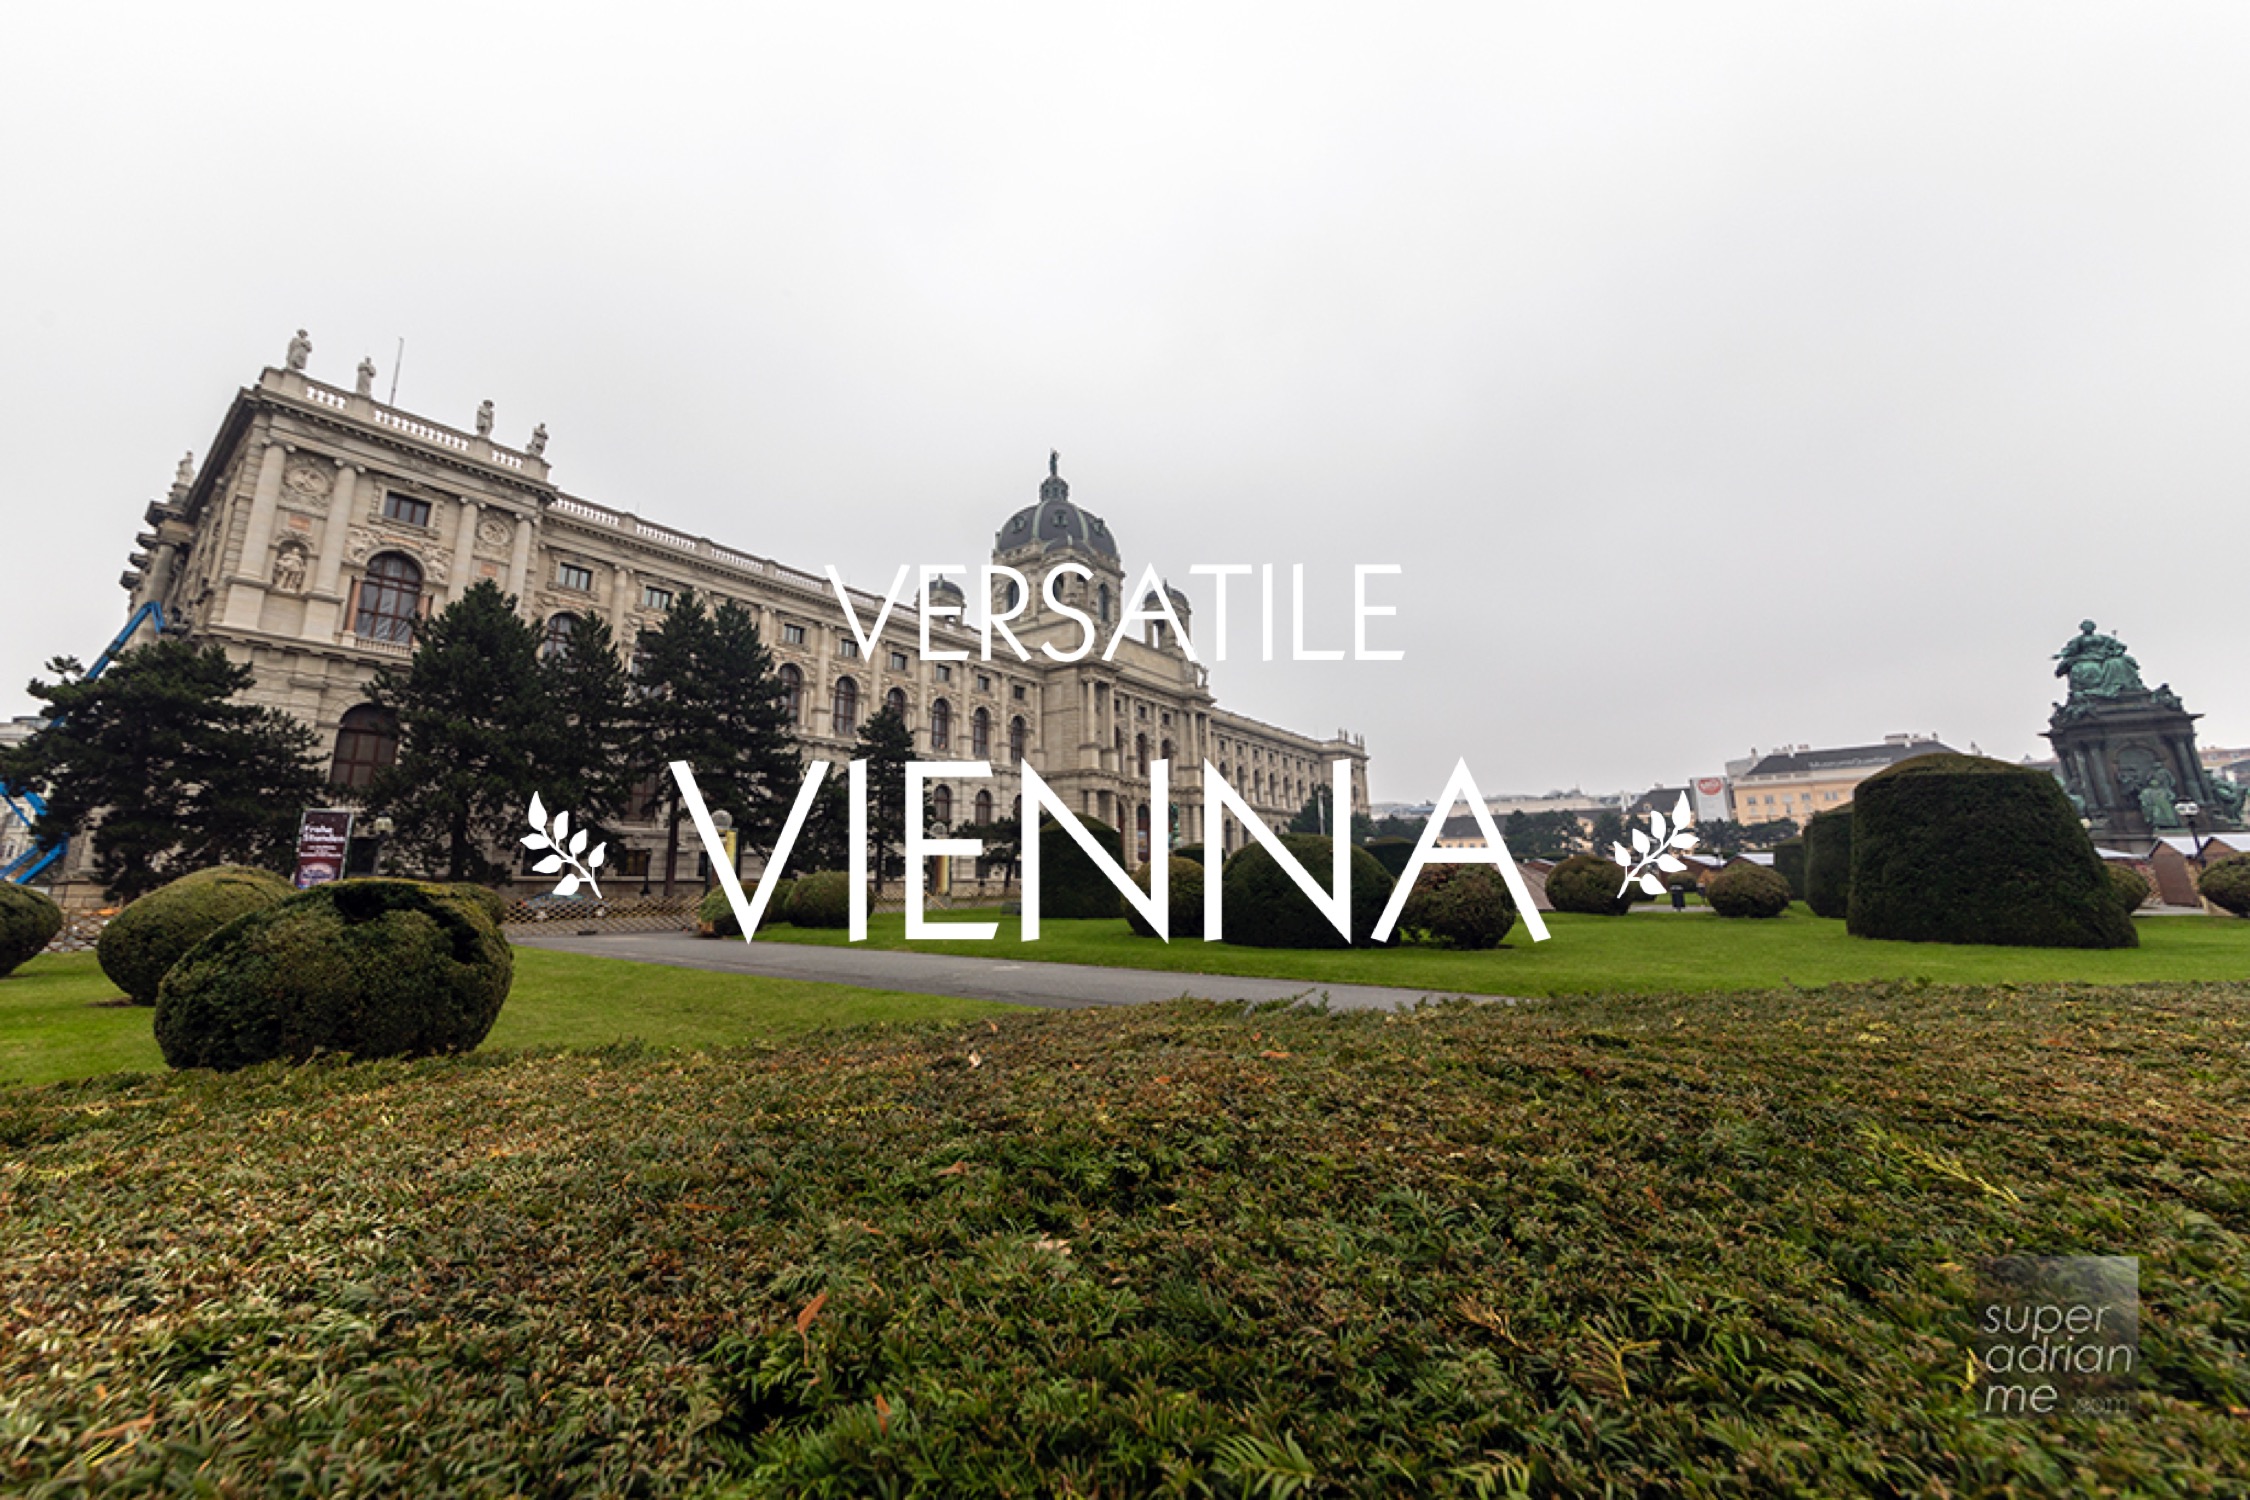 Versatile Vienna - Trafalgar Imperial Europe - Schronbrunn Palace and Gardens